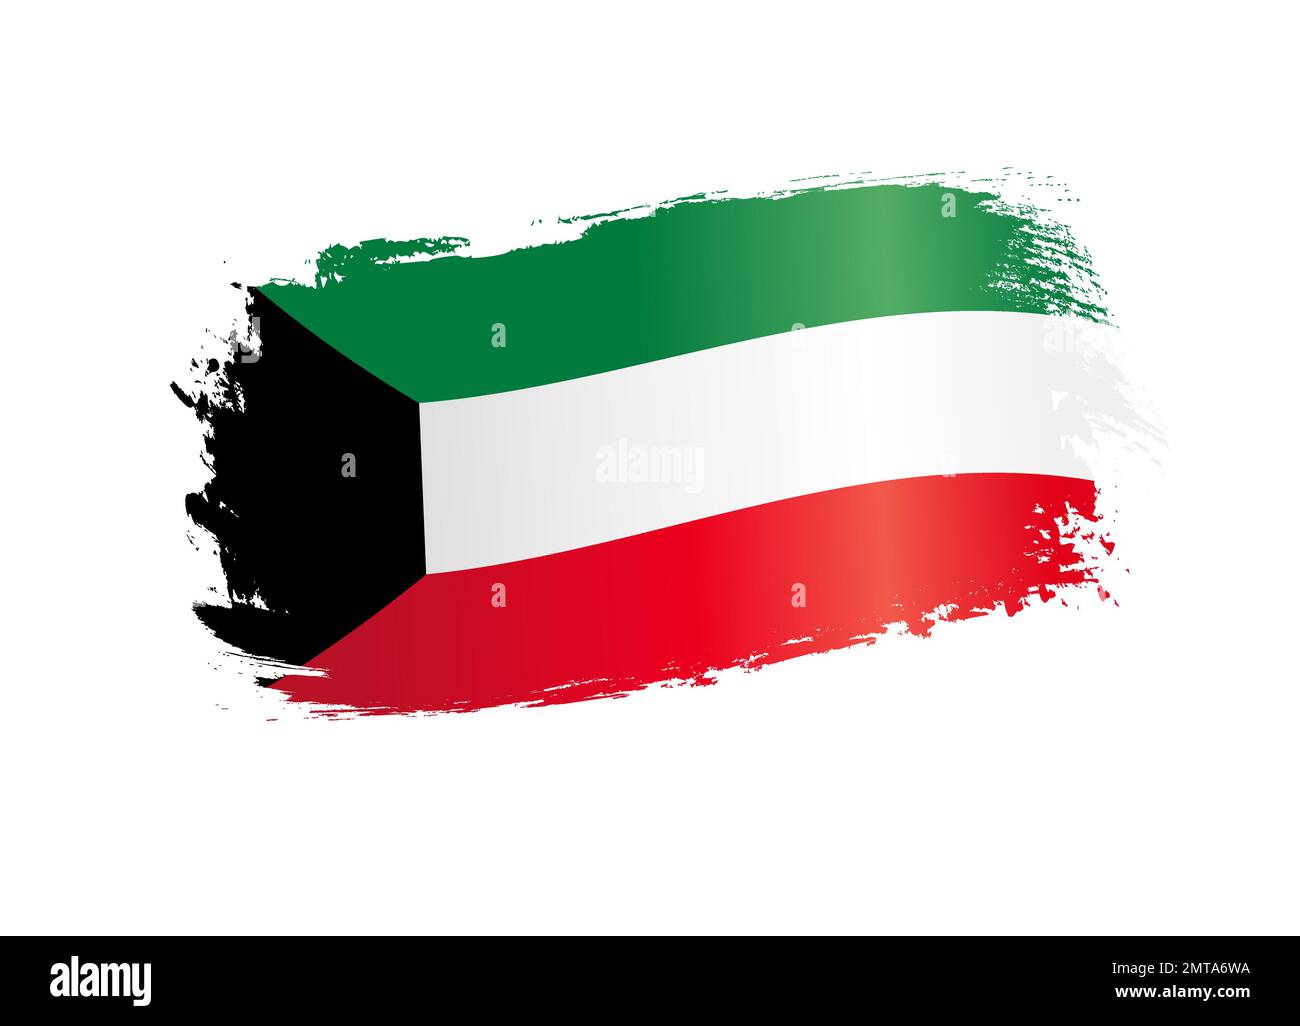 Bandiera del Kuwait realizzata con pennello textured. 25 febbraio, giornata nazionale del Kuwait - bandiera patriottica su sfondo bianco. Illustrazione vettoriale Illustrazione Vettoriale